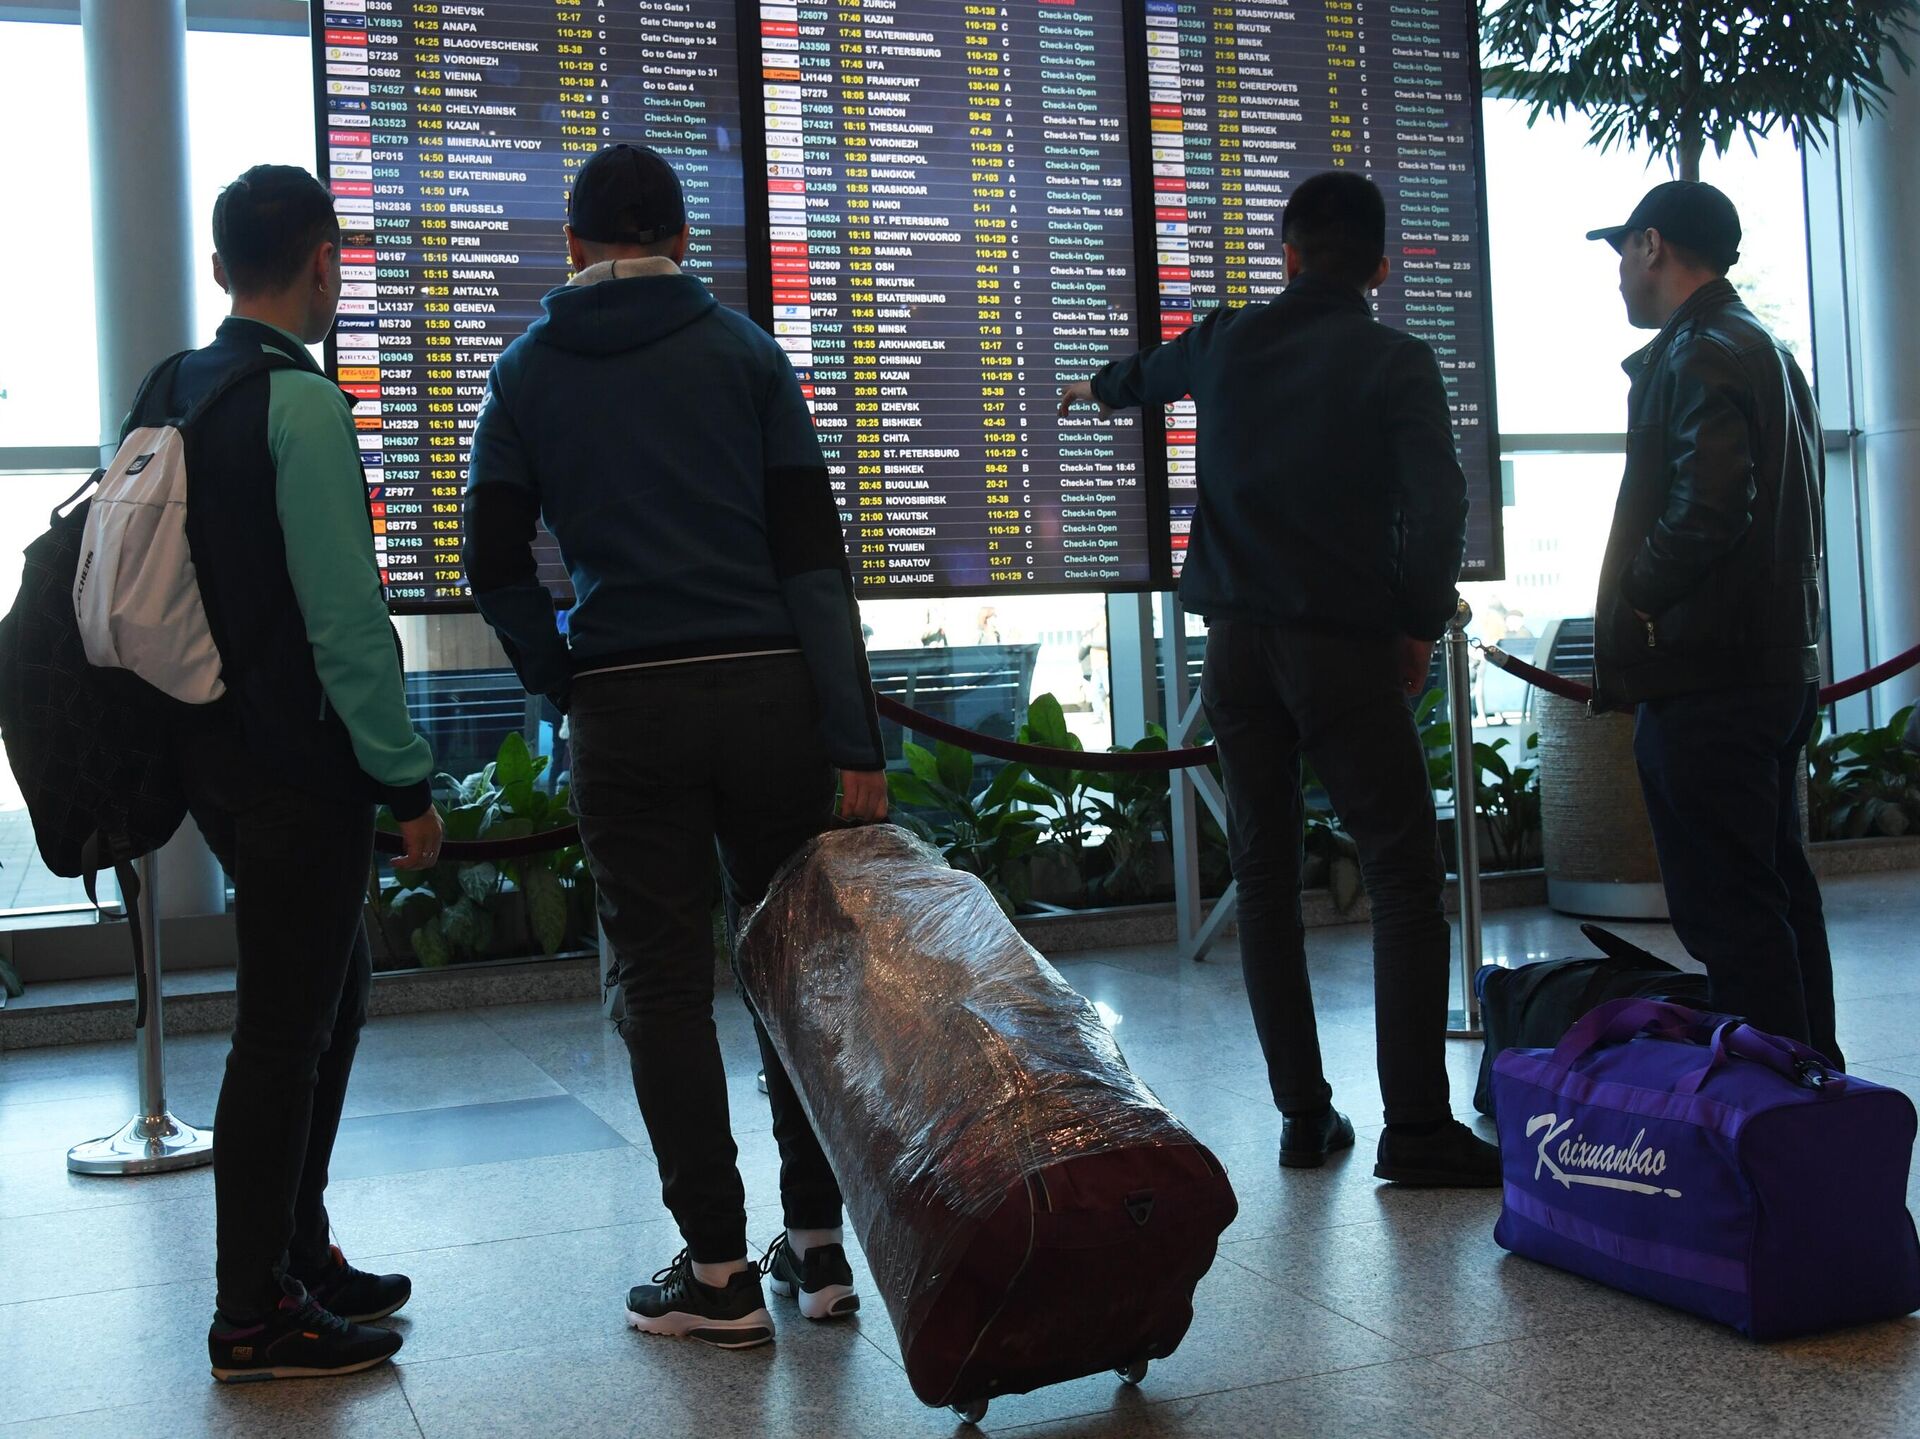 Домодедово аэропорт таджики уезжают. Мигранты в аэропорту. Мигранты в аэропорту Домодедово. Мигранты в аэропортах Москвы. Трудовые мигранты в аэропорту.